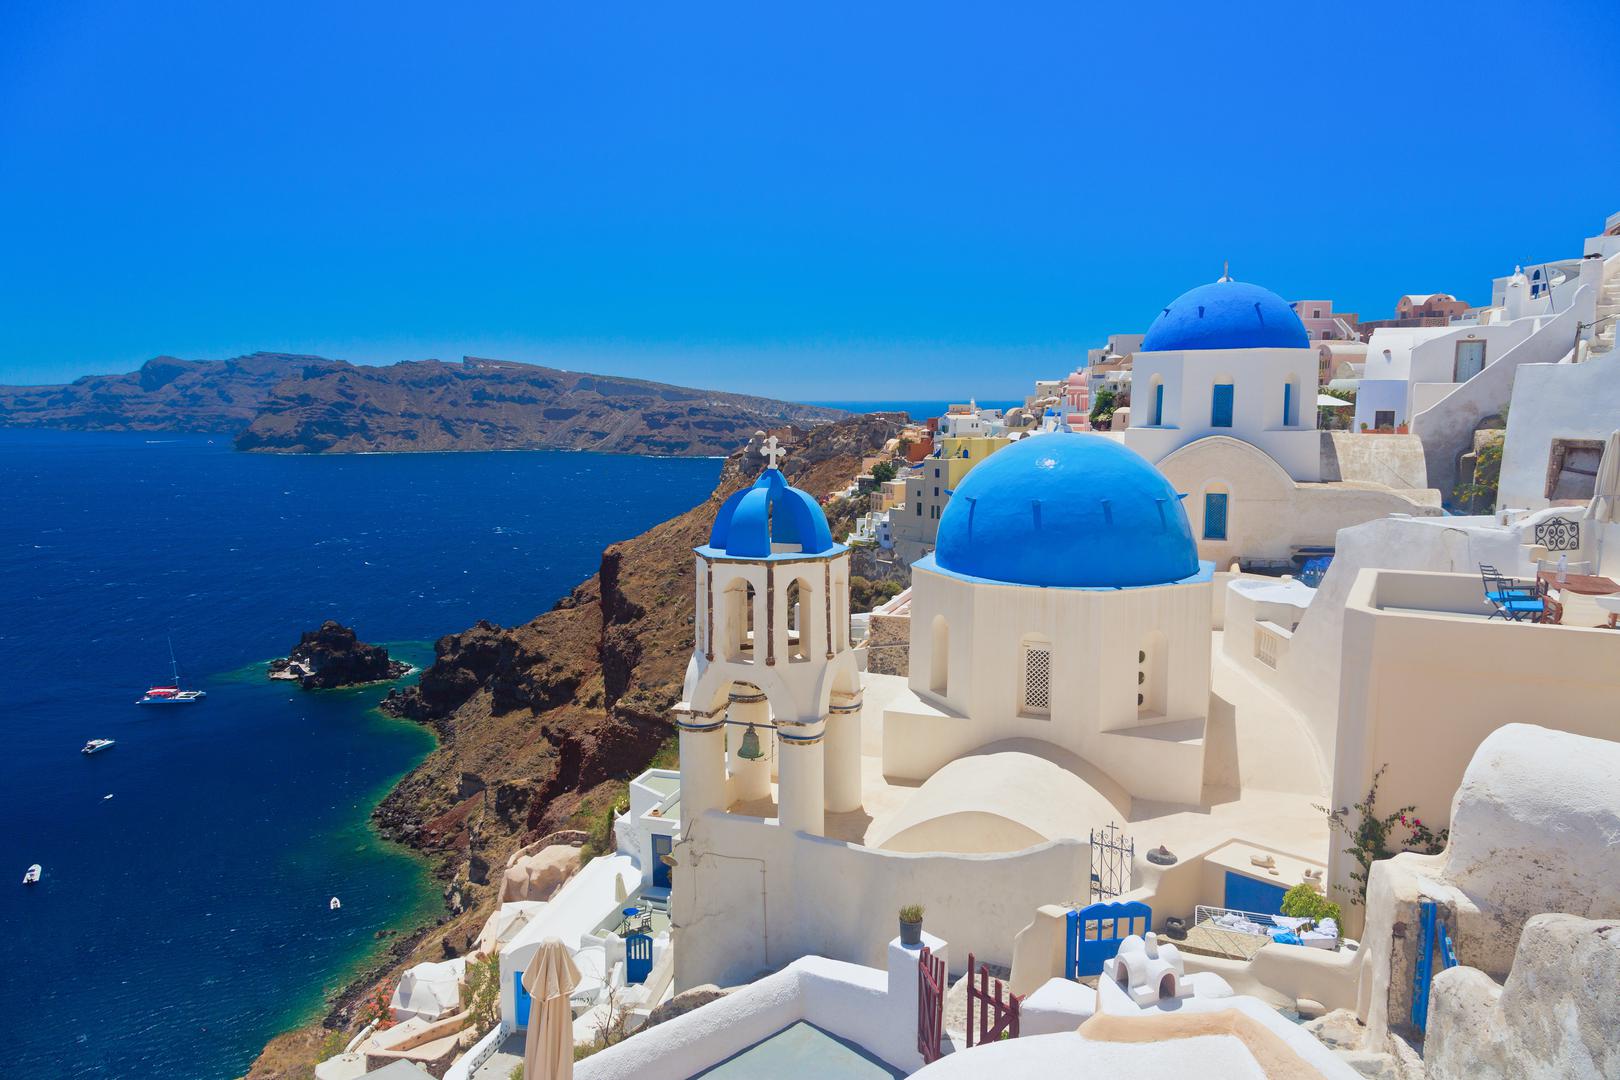 2. Grčka: Grčka je službeno najprijateljskija zemlja Europe prema turistima. Prekrasna zemlja ima prekrasne plaže i lijepa sela, kao i neke od najimpresivnijih drevnih ruševina na svijetu.